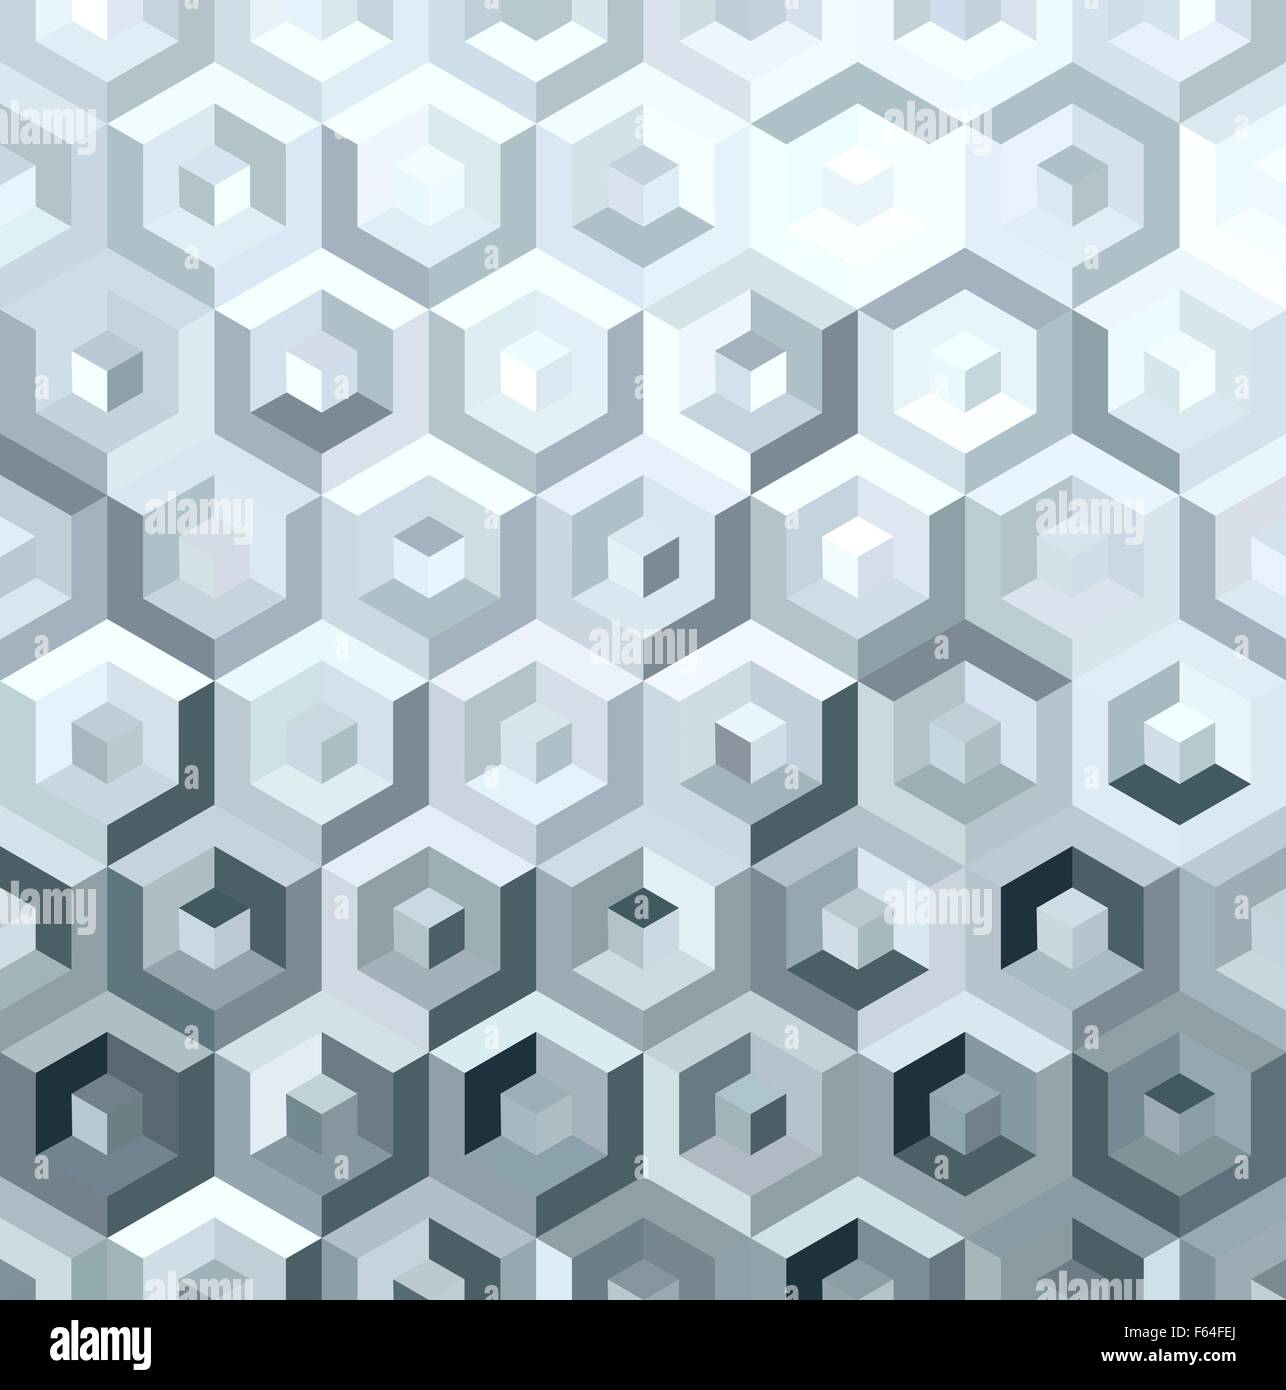 Metall Silber isometrischen 3d cube Form Musterdesign in low-Poly-Stil. Ideal für Web-Hintergrund, Print oder Grußkarte. Stock Vektor